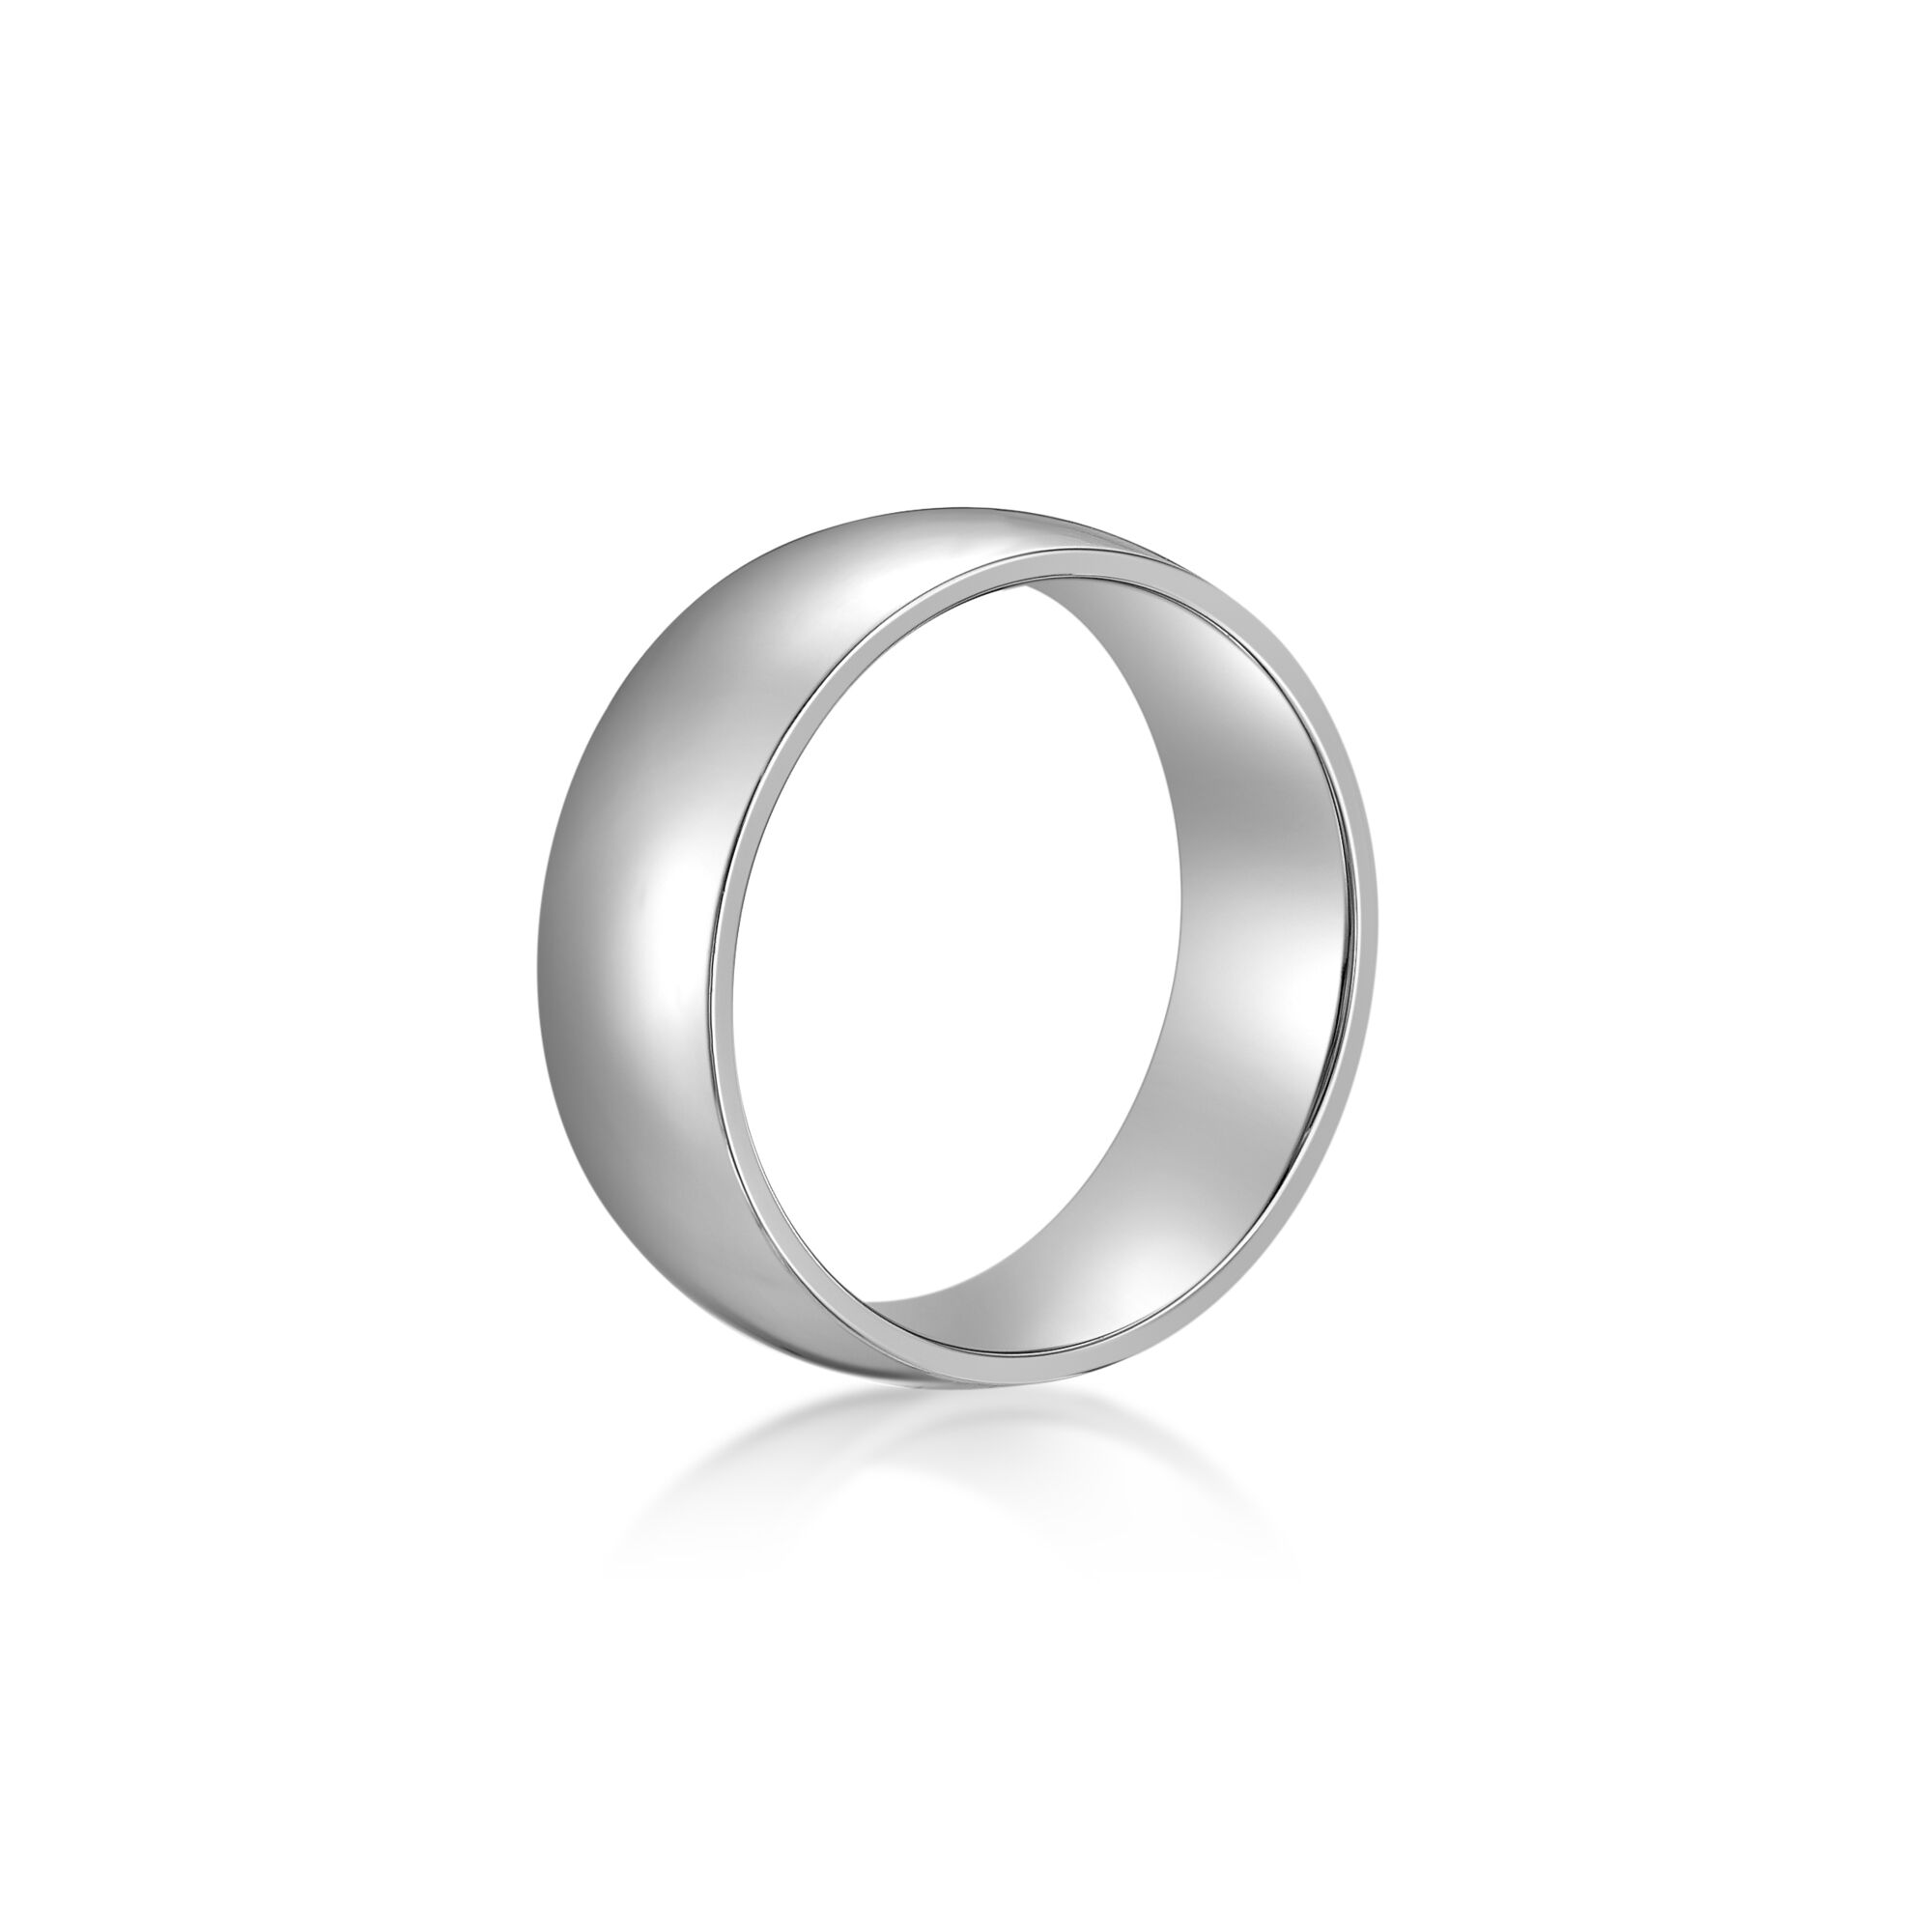 Silver Plain Ring For Men/Women Girls & Boys Stainless Steel Ring